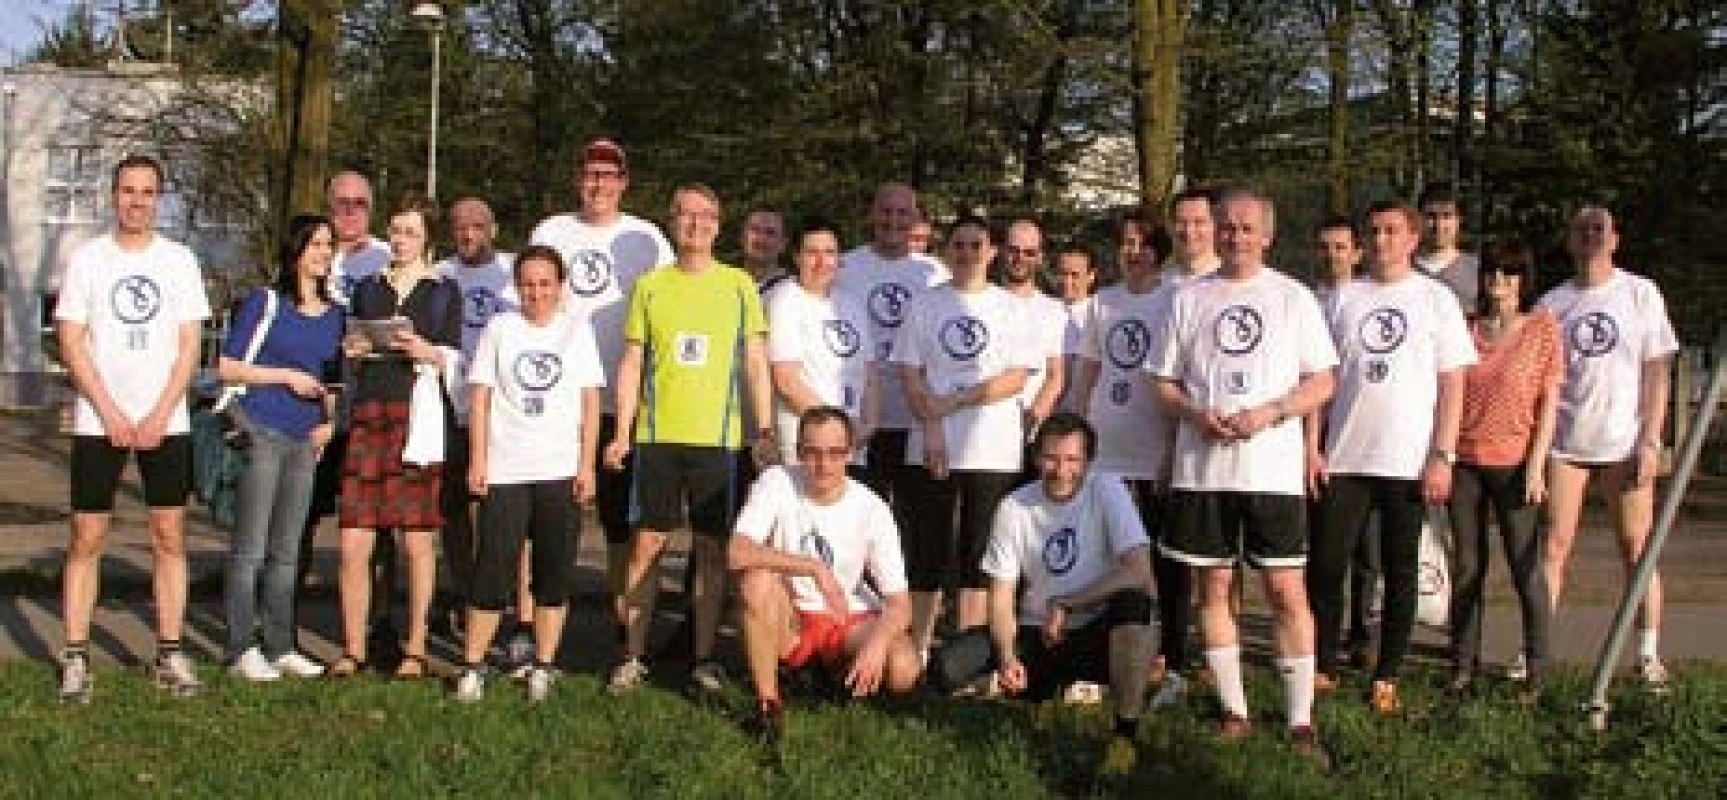 Účastníci Běhu proti kolorektálnímu karcinomu.
Fig. 2. Run against the colorectal cancer participants.